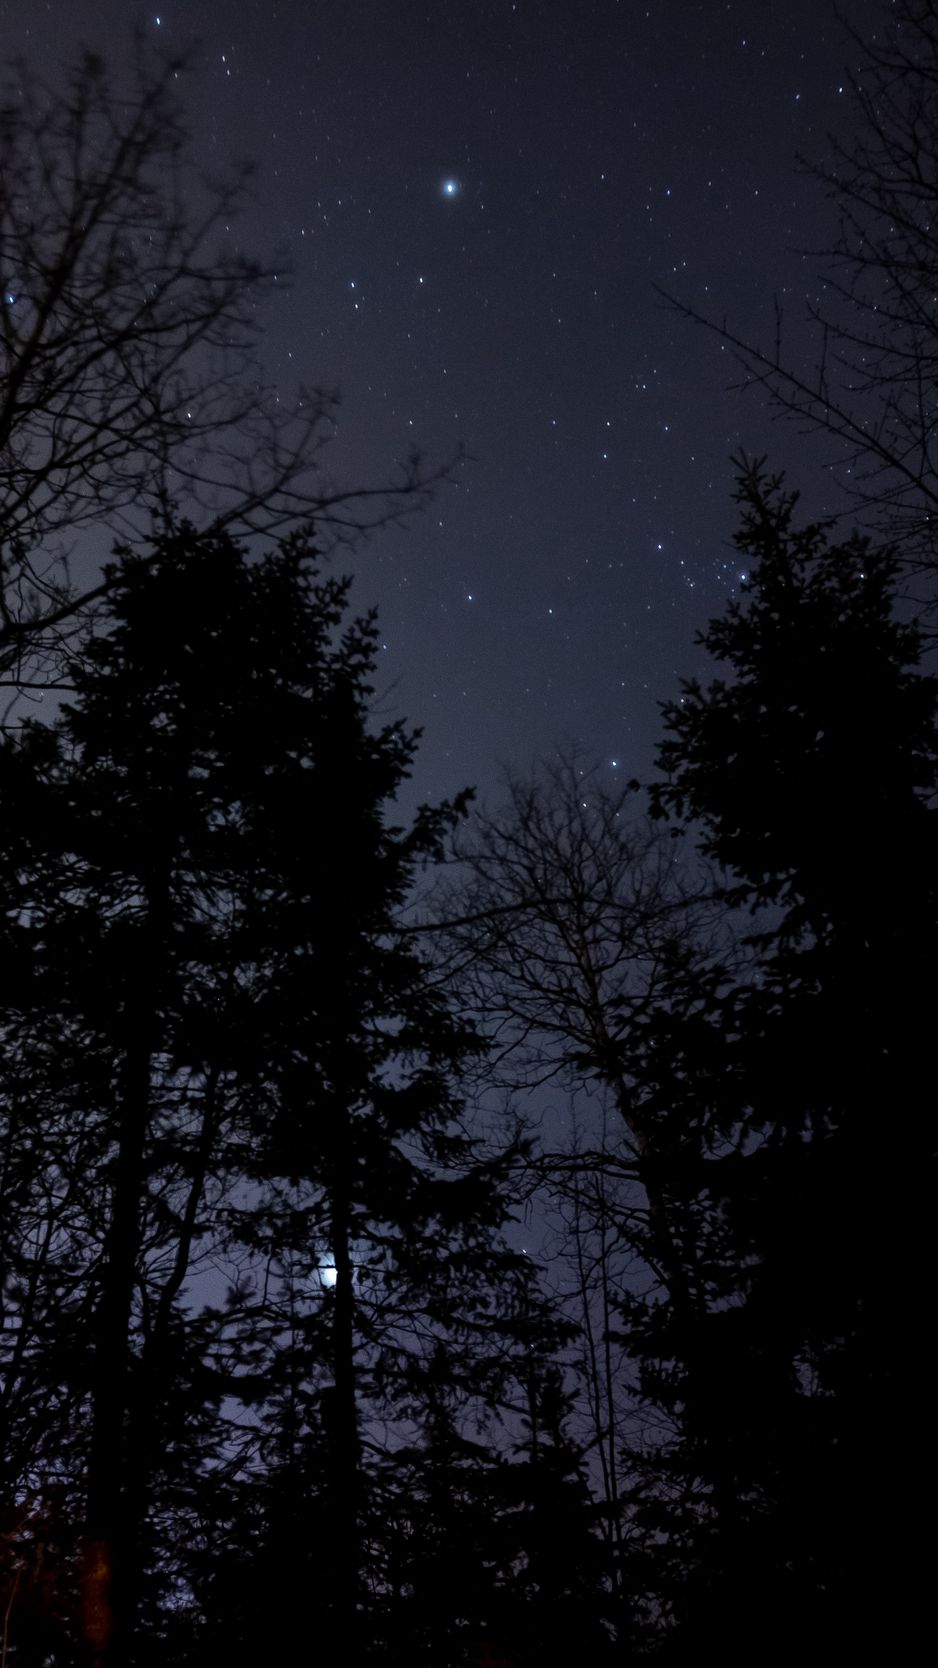 Tải ngay hình nền đêm rừng bầu trời sao iPhone 8/7 để cùng thưởng thức vẻ đẹp tuyệt vời của thiên nhiên. Nét đẹp hoang sơ của rừng, kết hợp với bầu trời sao lấp lánh, sẽ làm cho điện thoại của bạn trở nên sống động và độc đáo hơn bao giờ hết. 